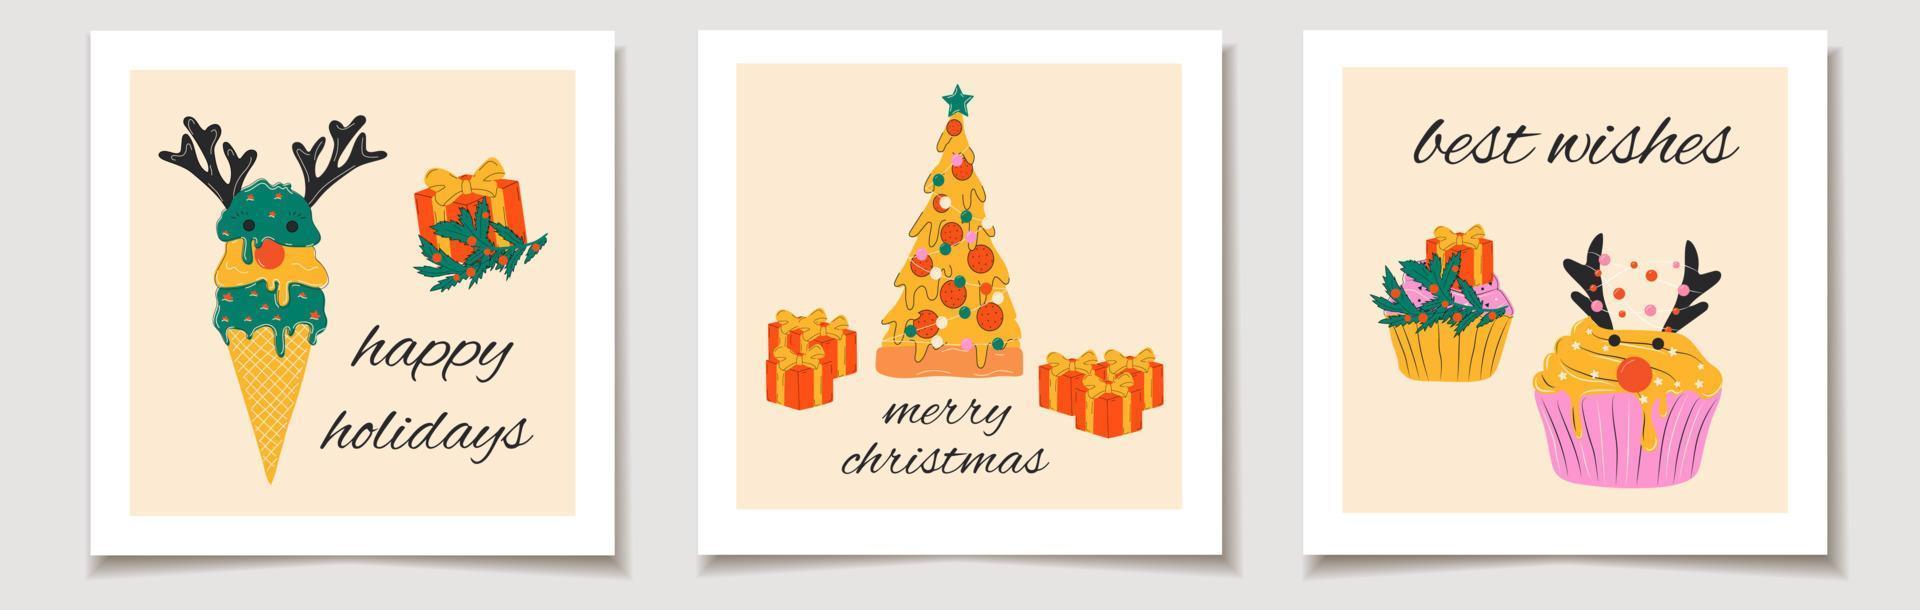 Natale vettore regalo carta o etichetta Natale impostato carino cibo Pizza, ghiaccio crema, cupcakes decorato con Natale decorazioni. allegro Natale scritte, migliore auguri.